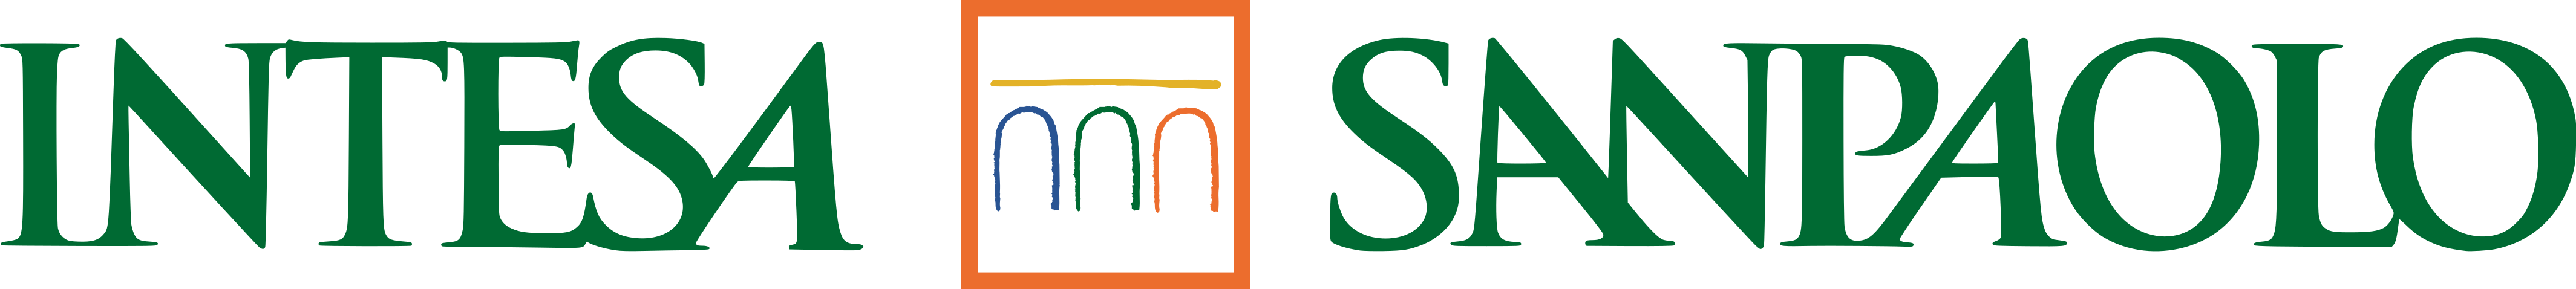 intesa sanpaolo logo